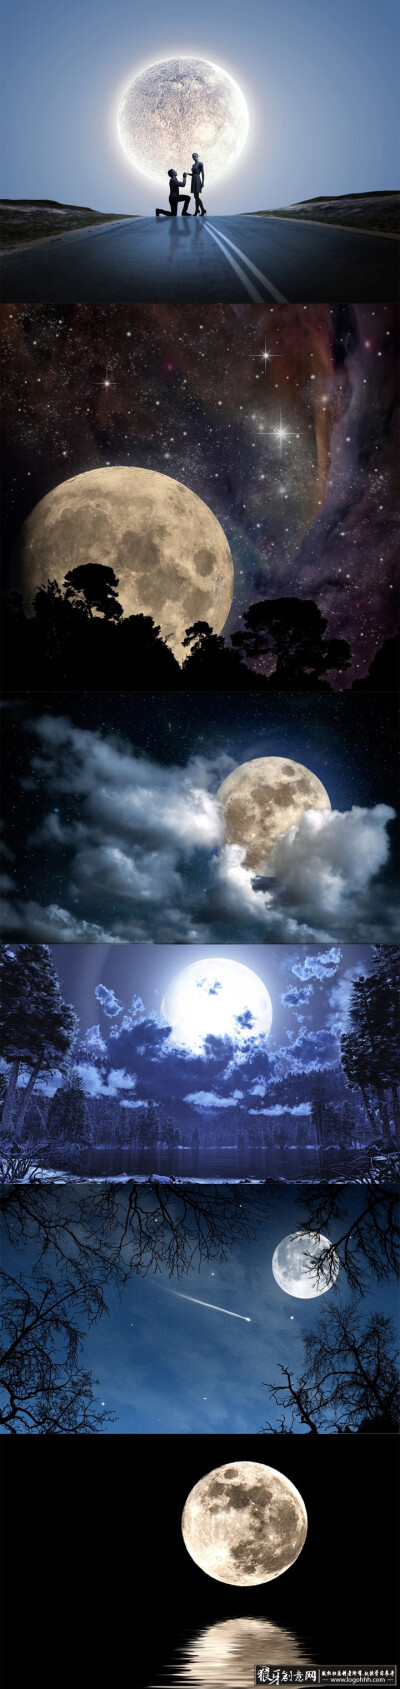 背景素材 唯美星空夜色高清背景 圆月亮夜空夜晚 宇宙太空月光月球